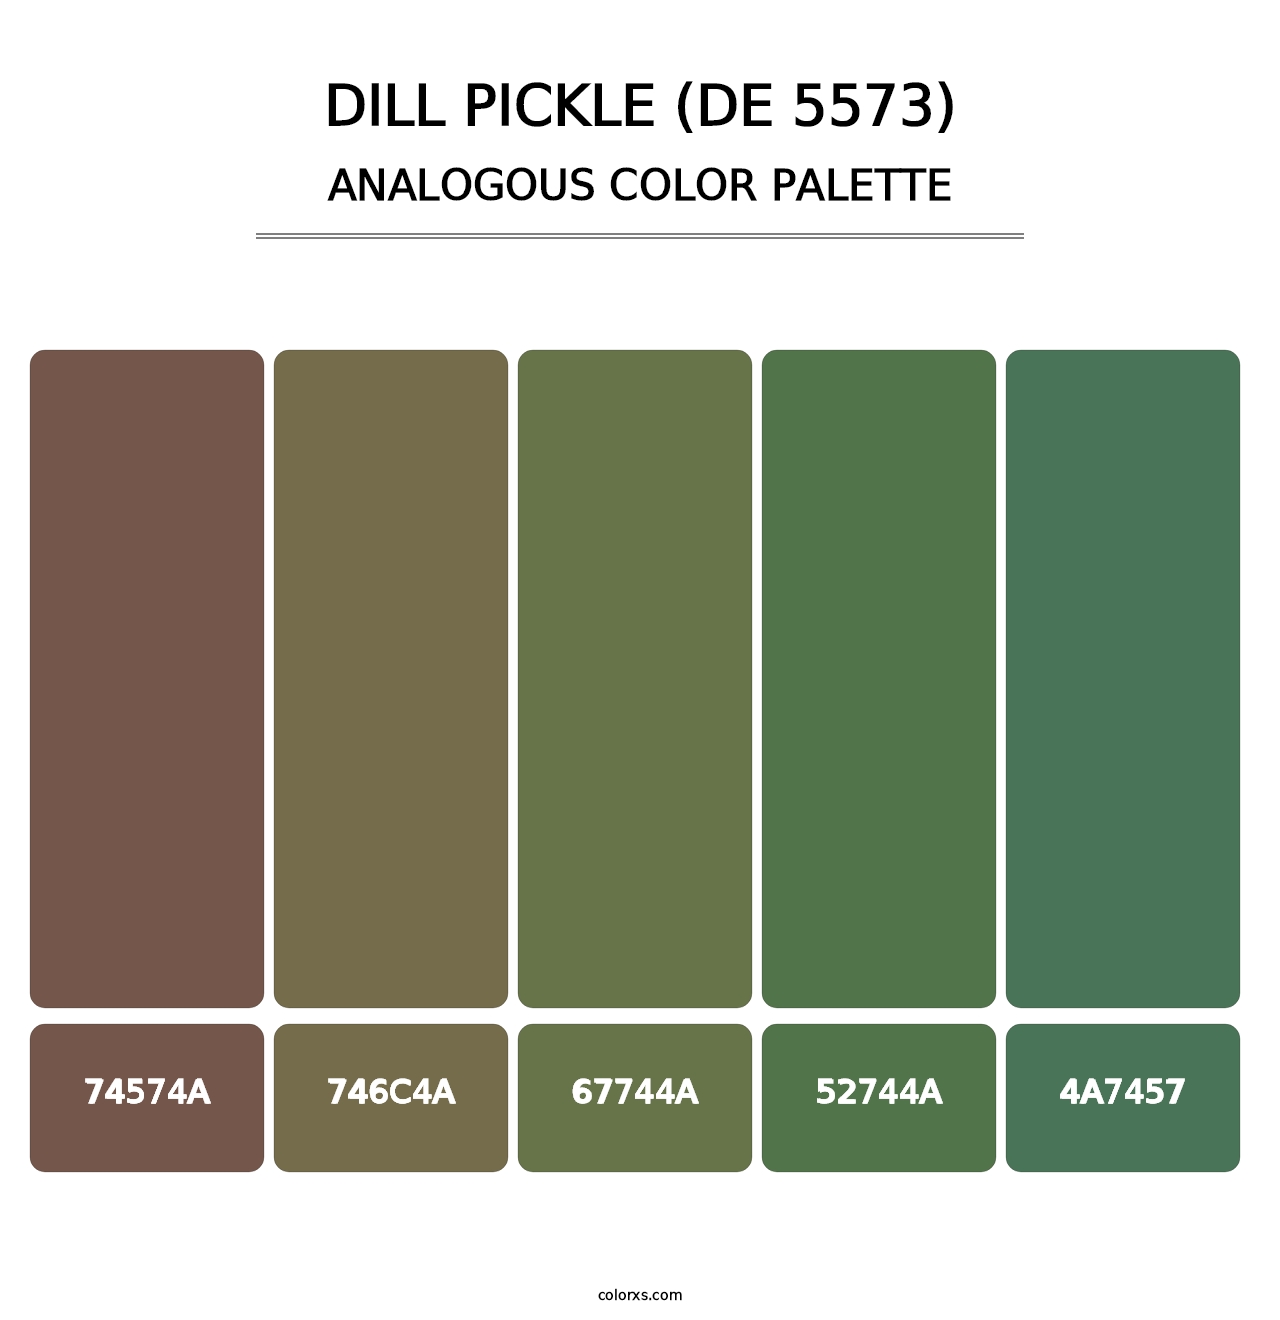 Dill Pickle (DE 5573) - Analogous Color Palette